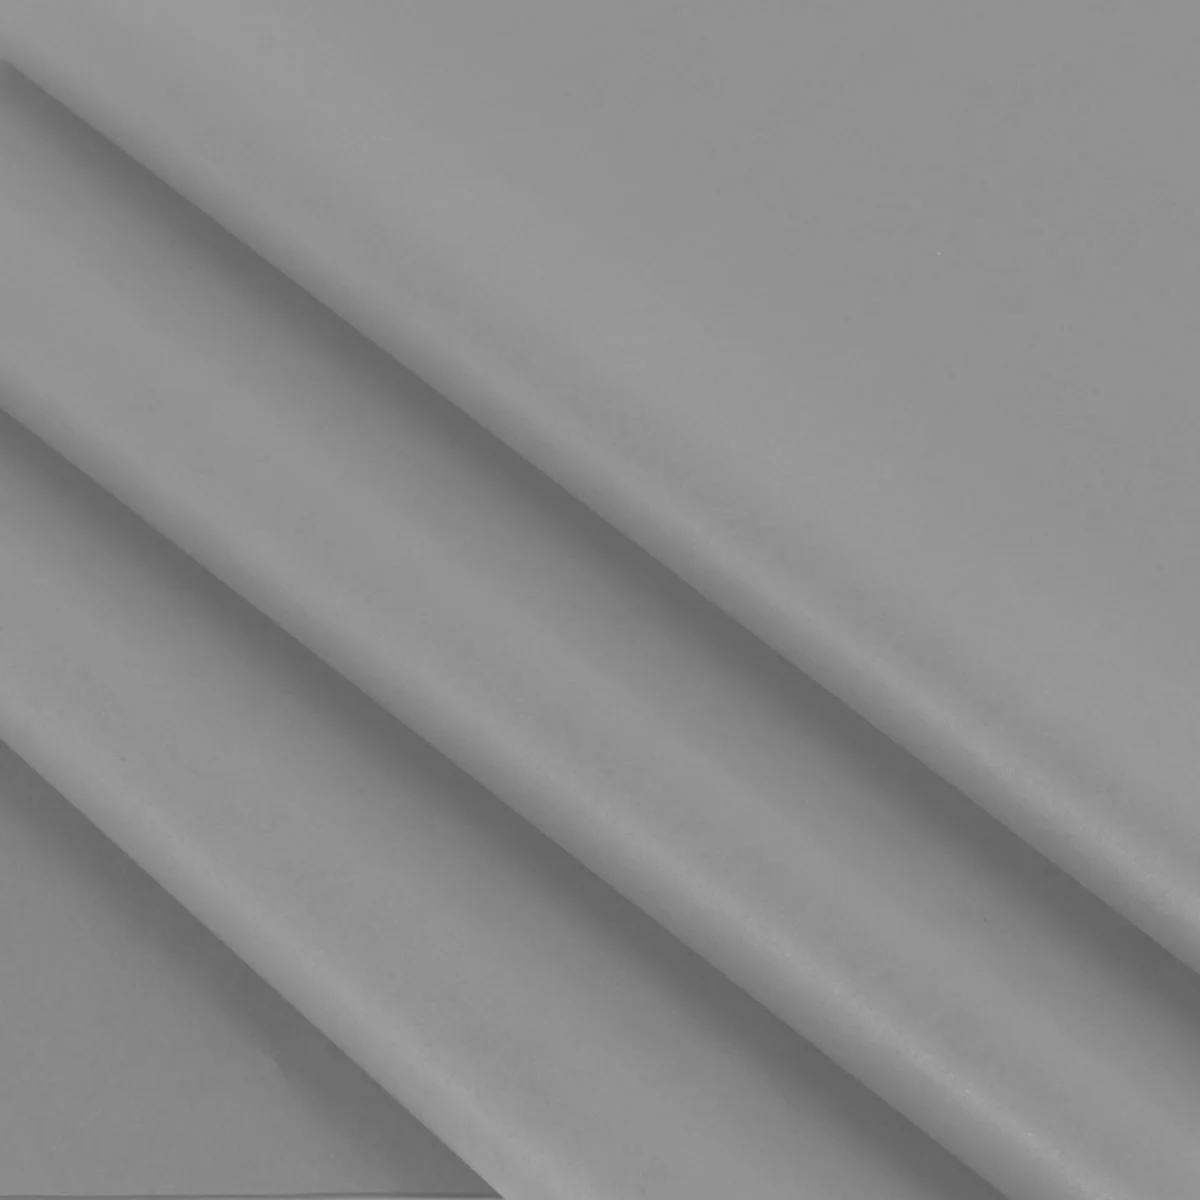 Vloeipapier grijs 25 x 35 cm (480 vellen)